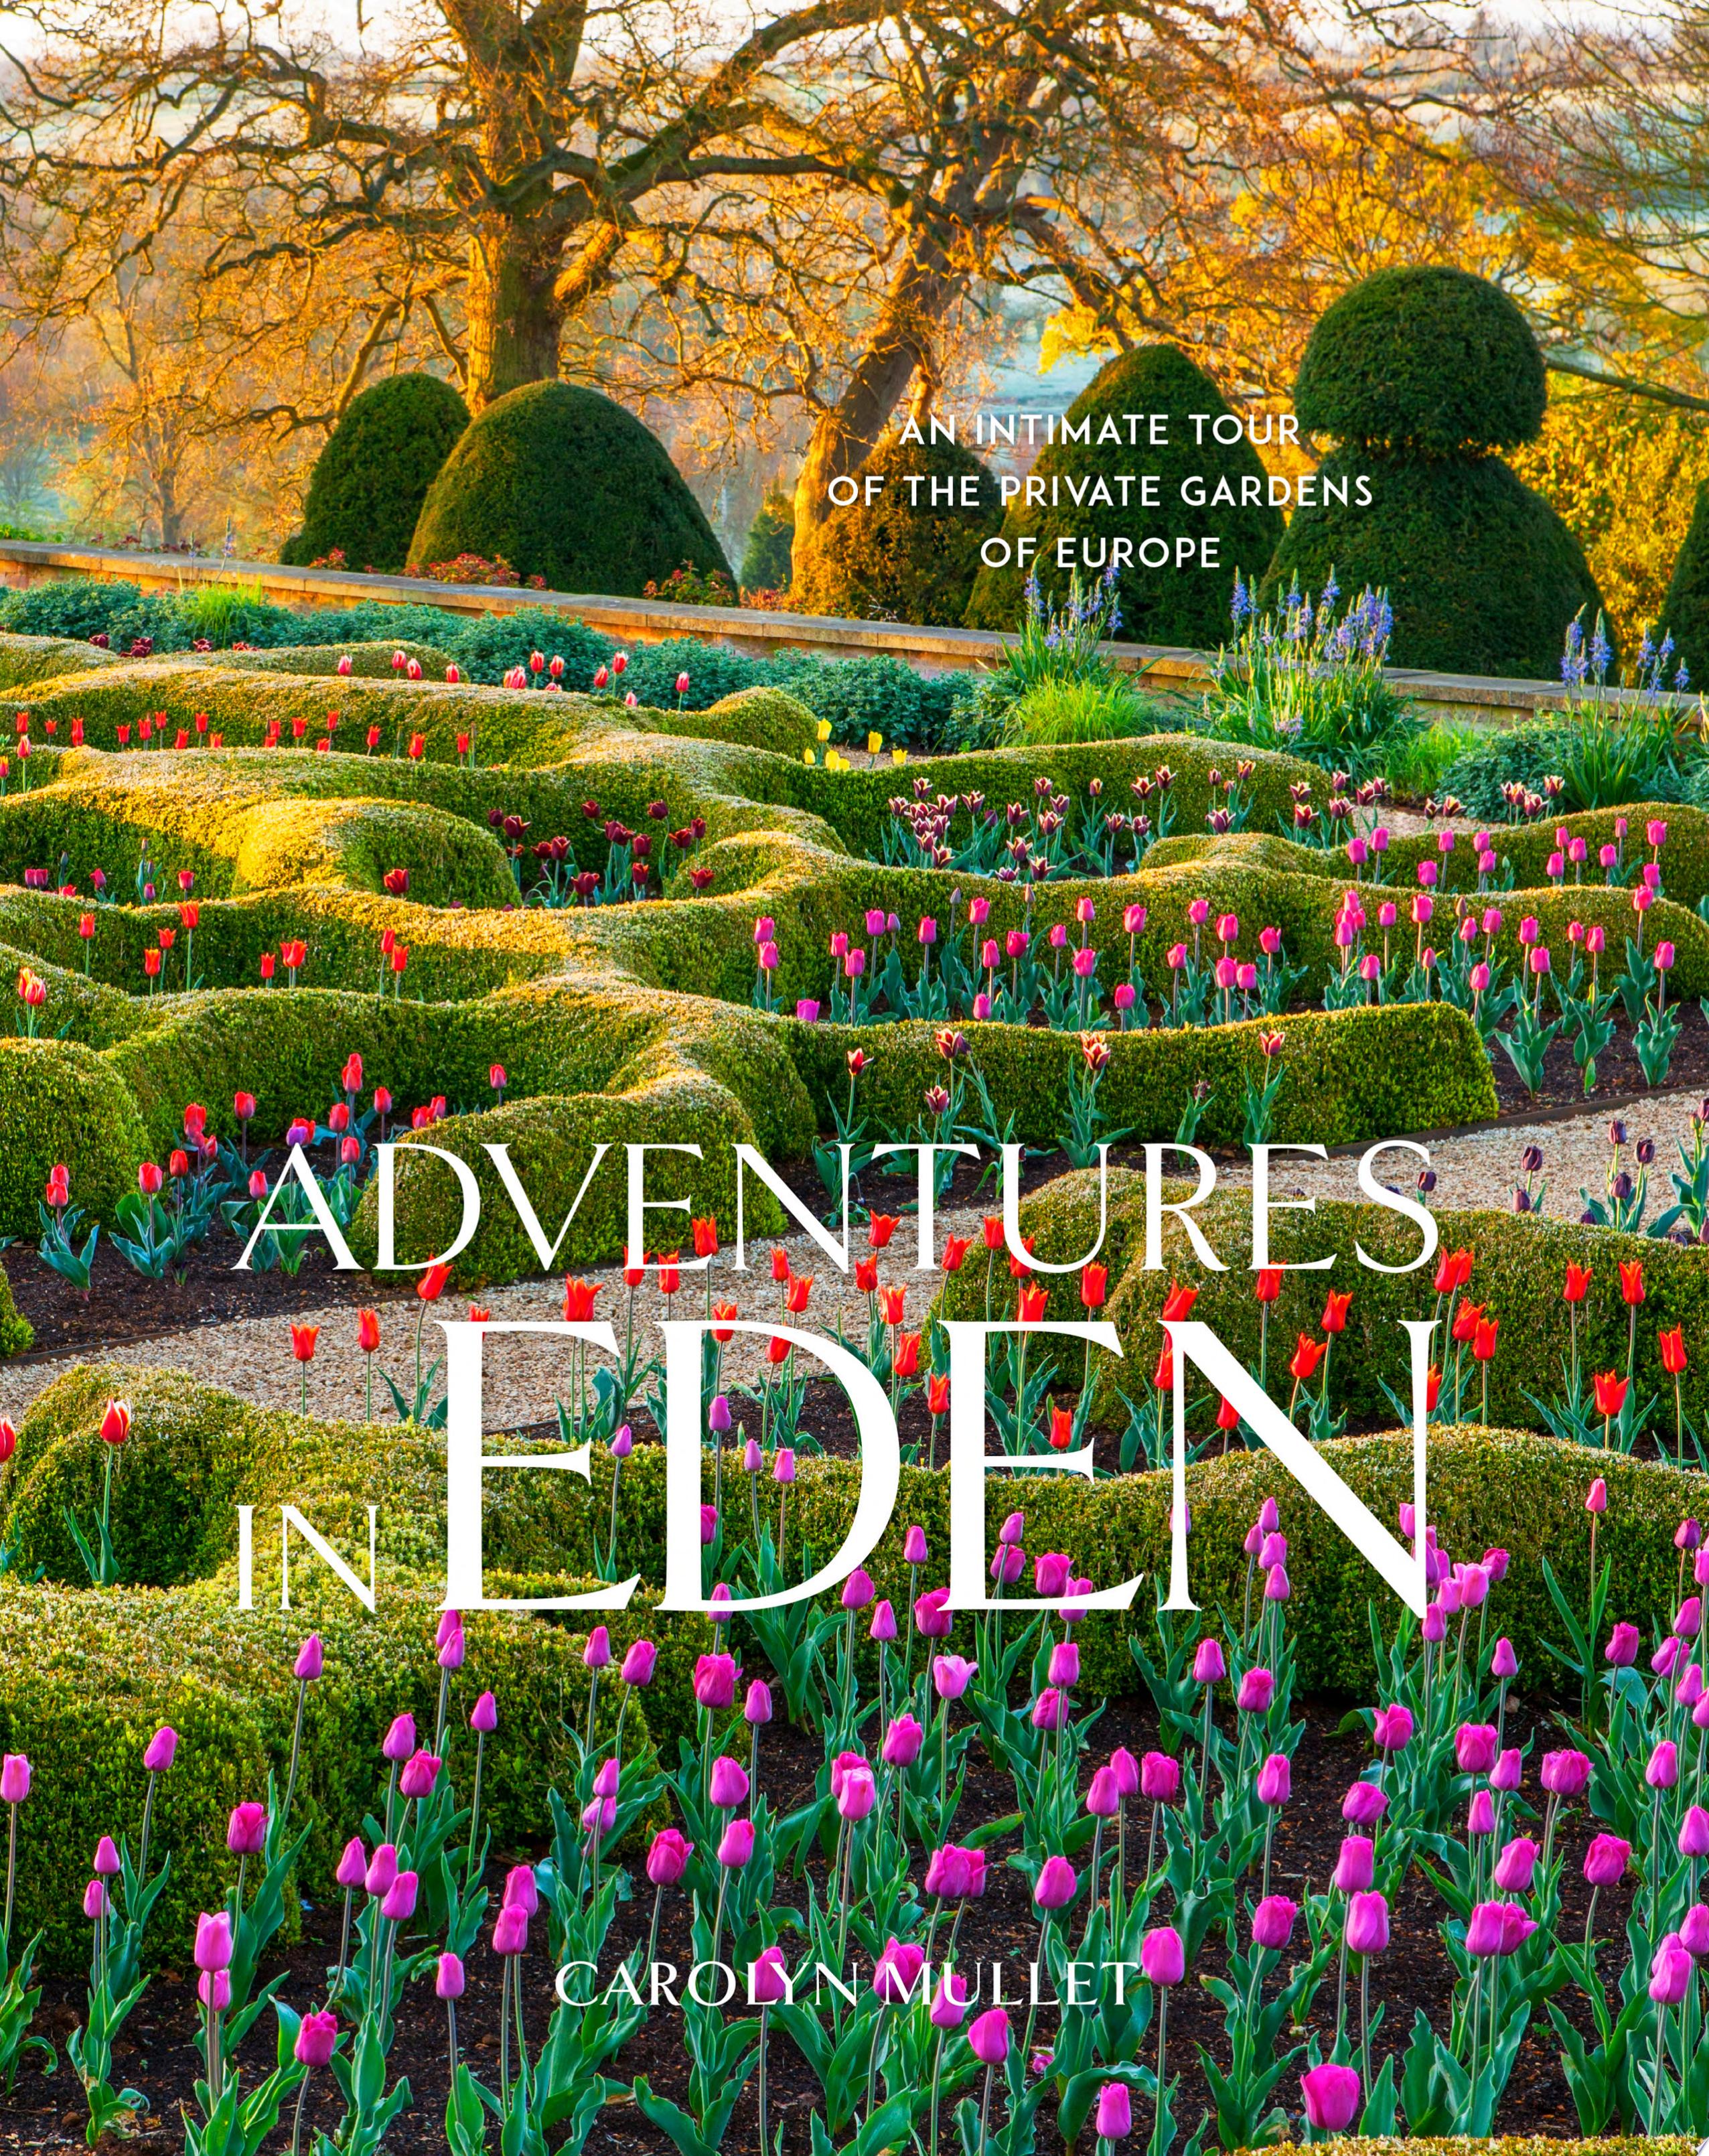 Image for "Adventures in Eden"